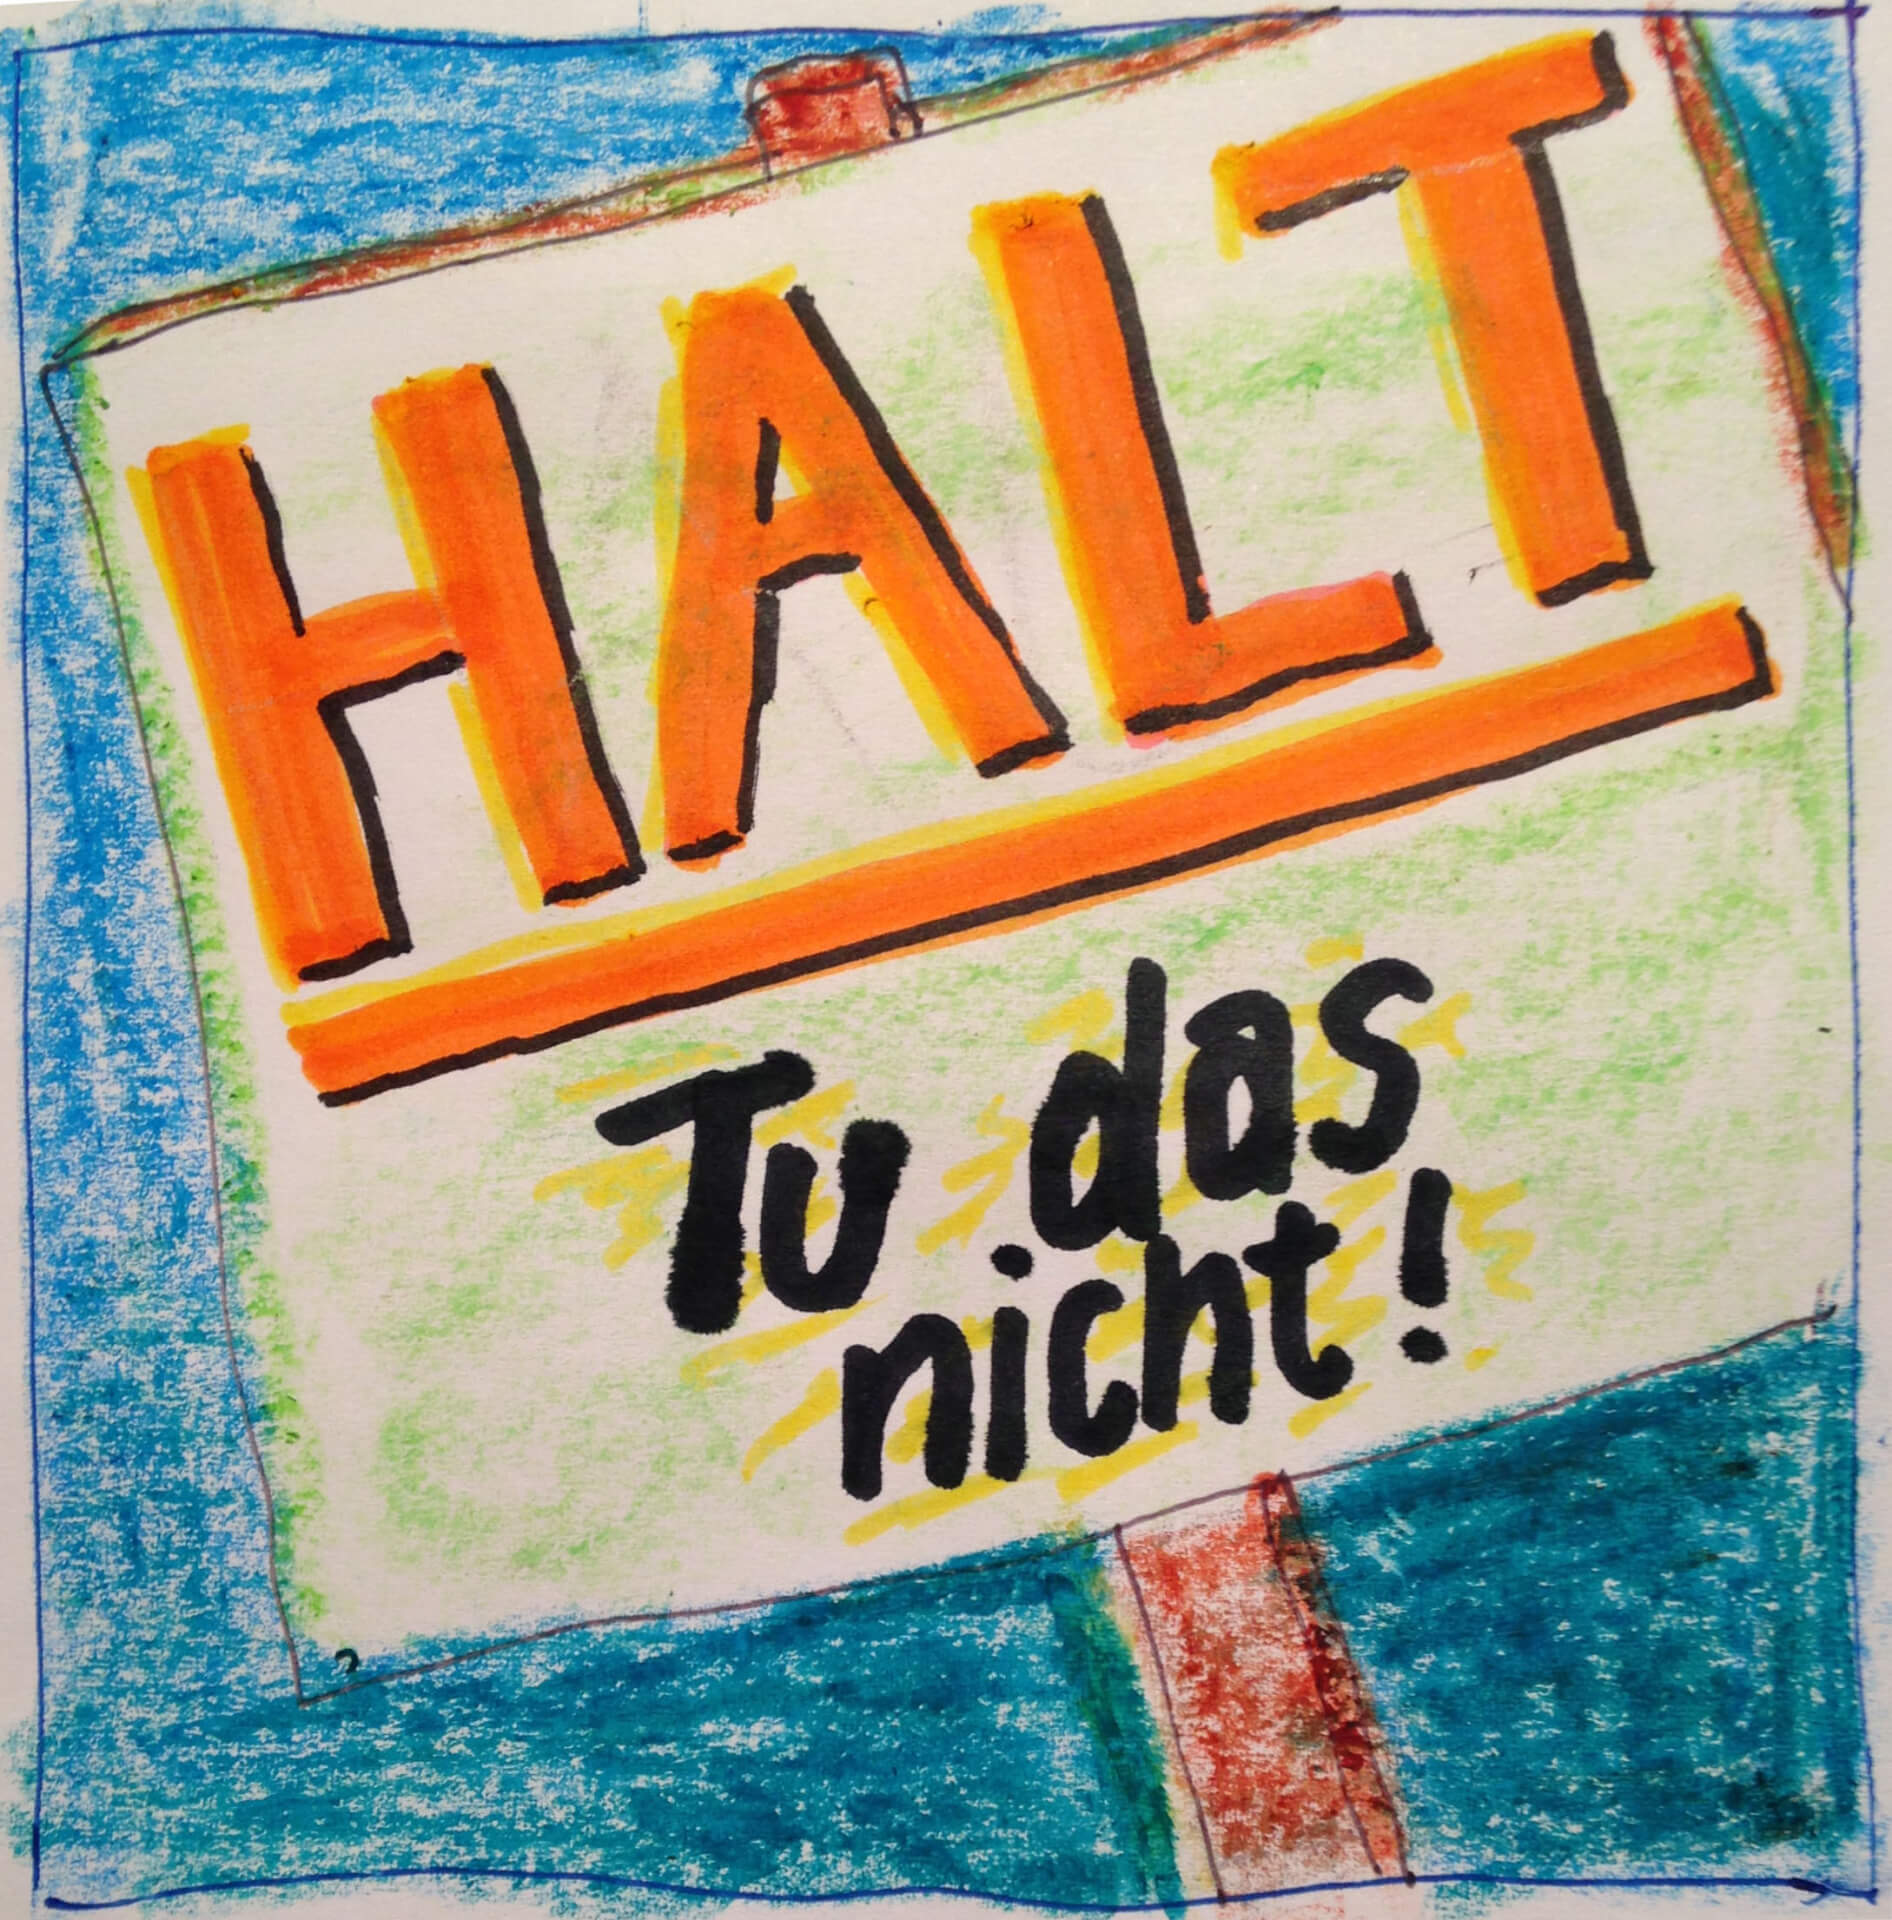 In die mit Buntstiften gezeichnete Kinderzeichnung eines Schildes mit dem Wort „halt“ und dem Satz „tu das nicht!“, was auf Deutsch „Tu das nicht!“ bedeutet, ist eine Stimme integriert.